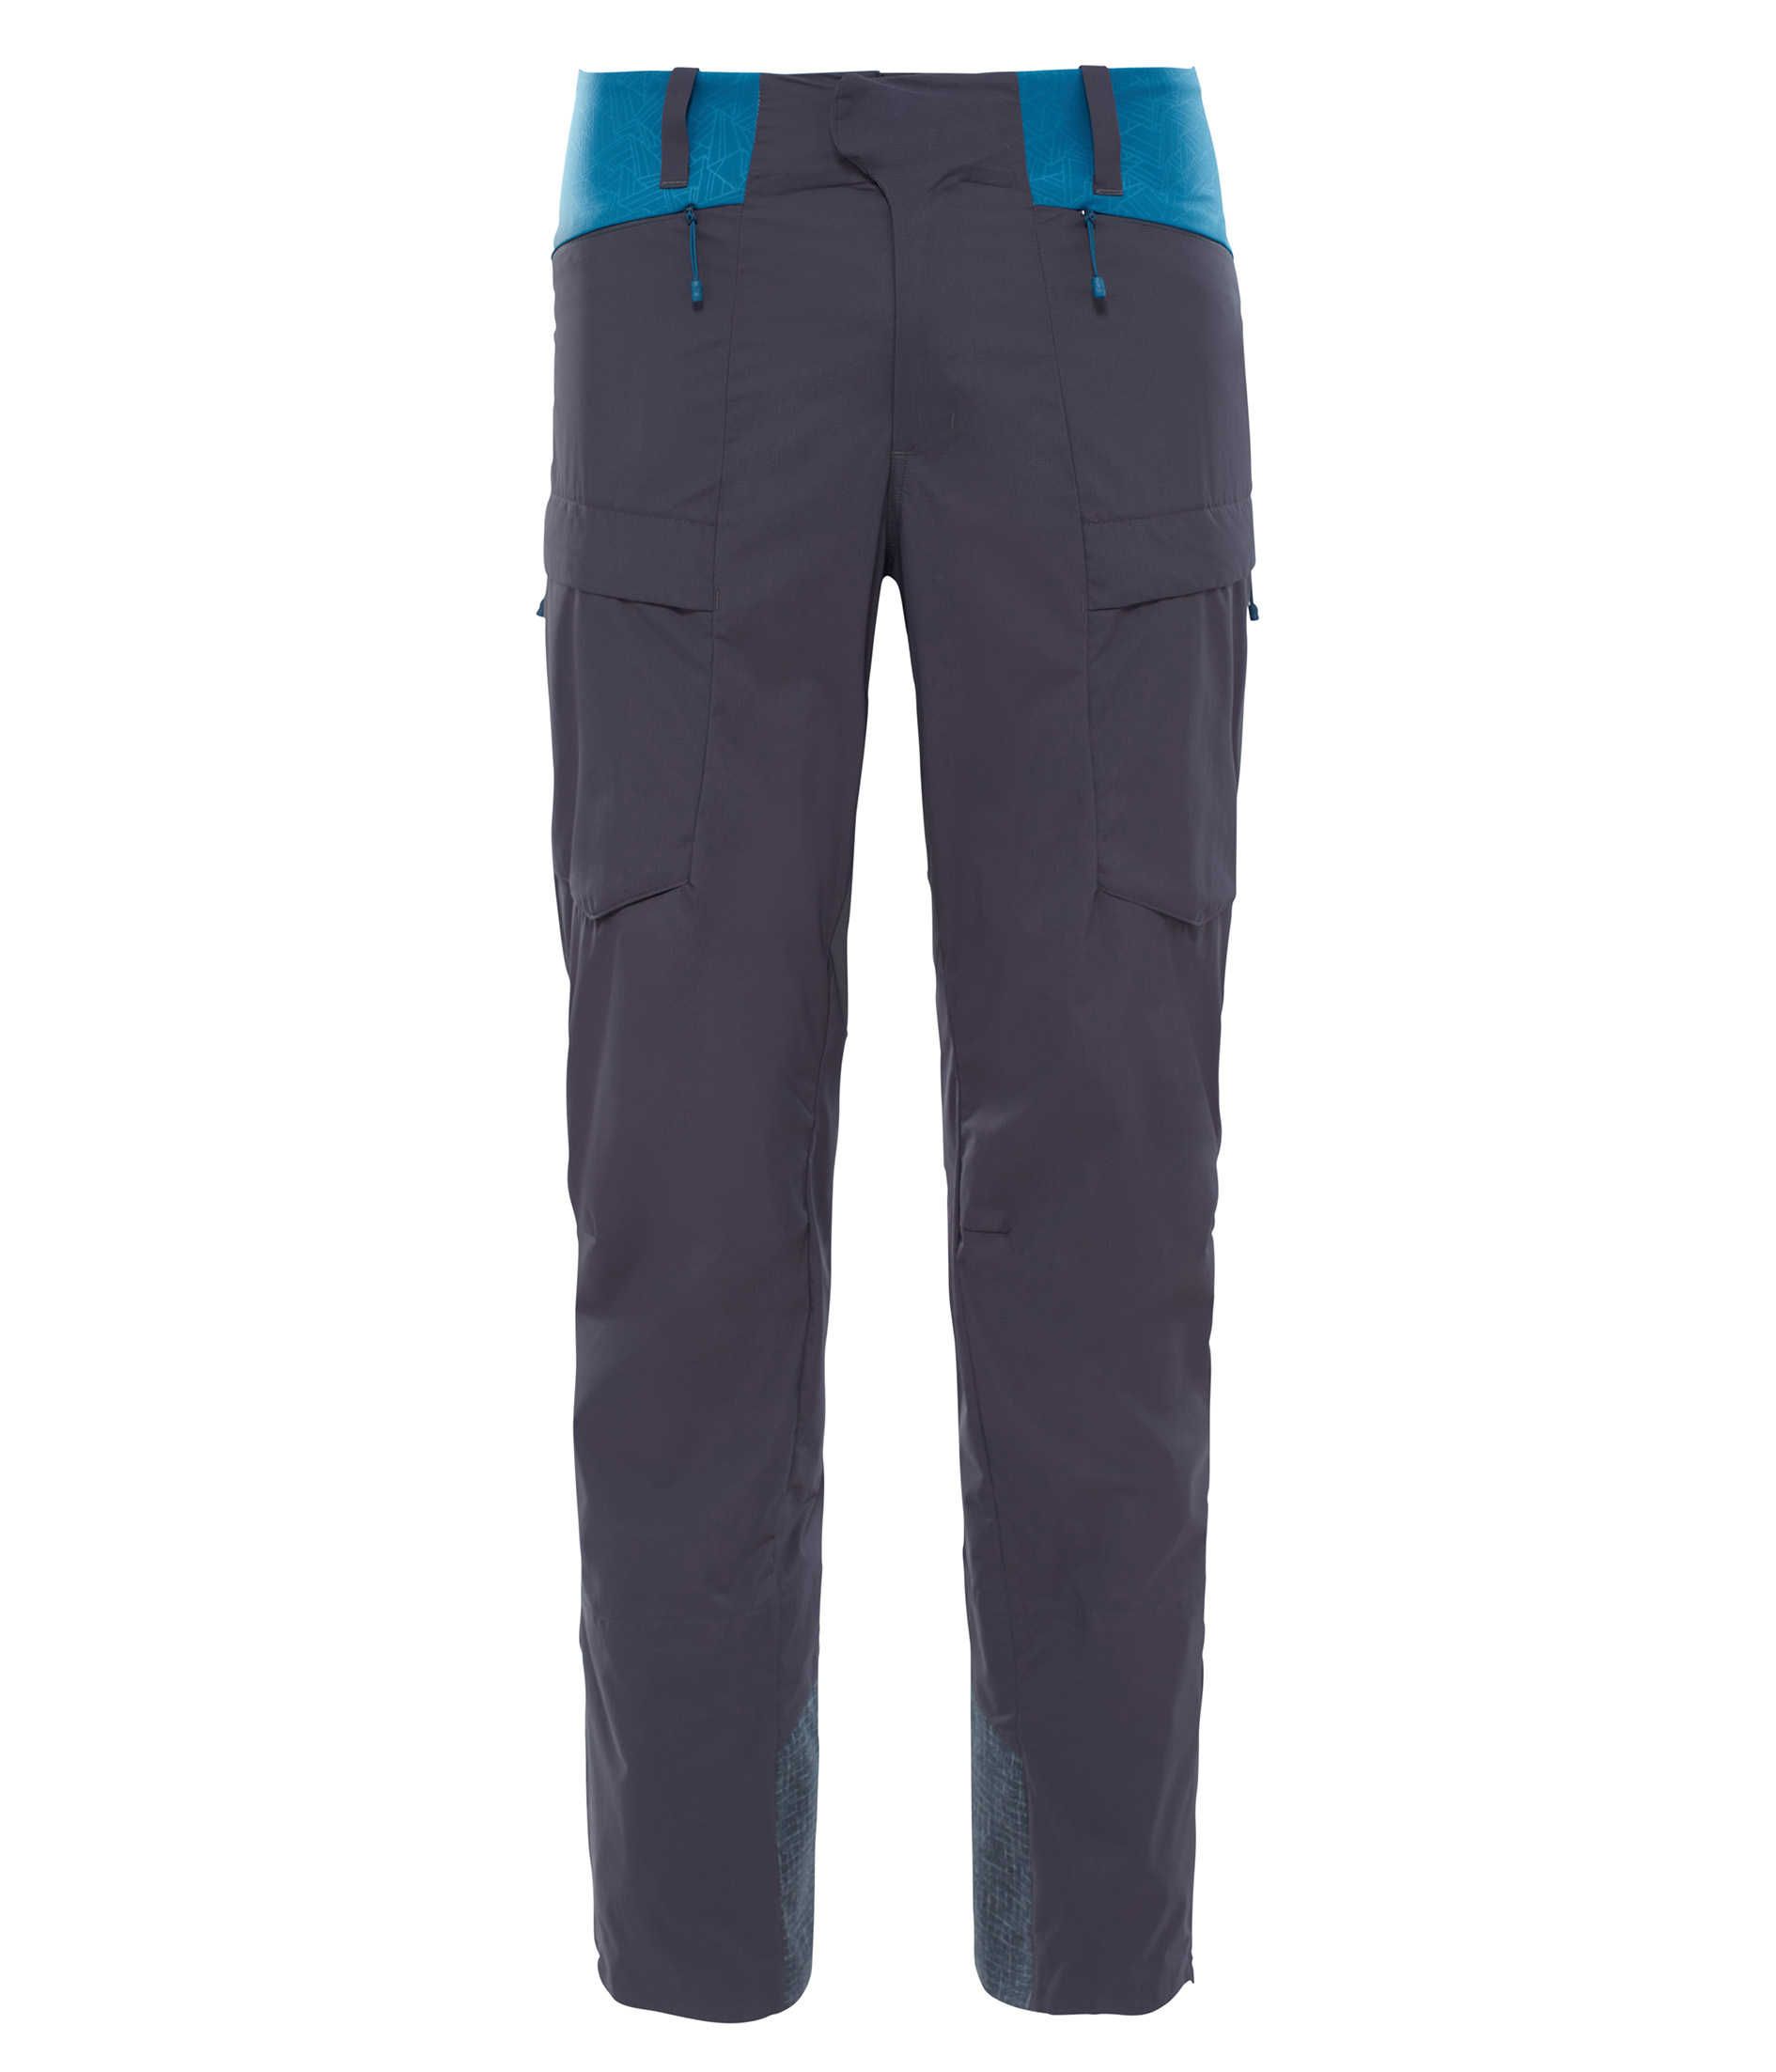 Pantalon Hybrid Fuyu Subarashi - Longueur Standard - Asphalt Grey